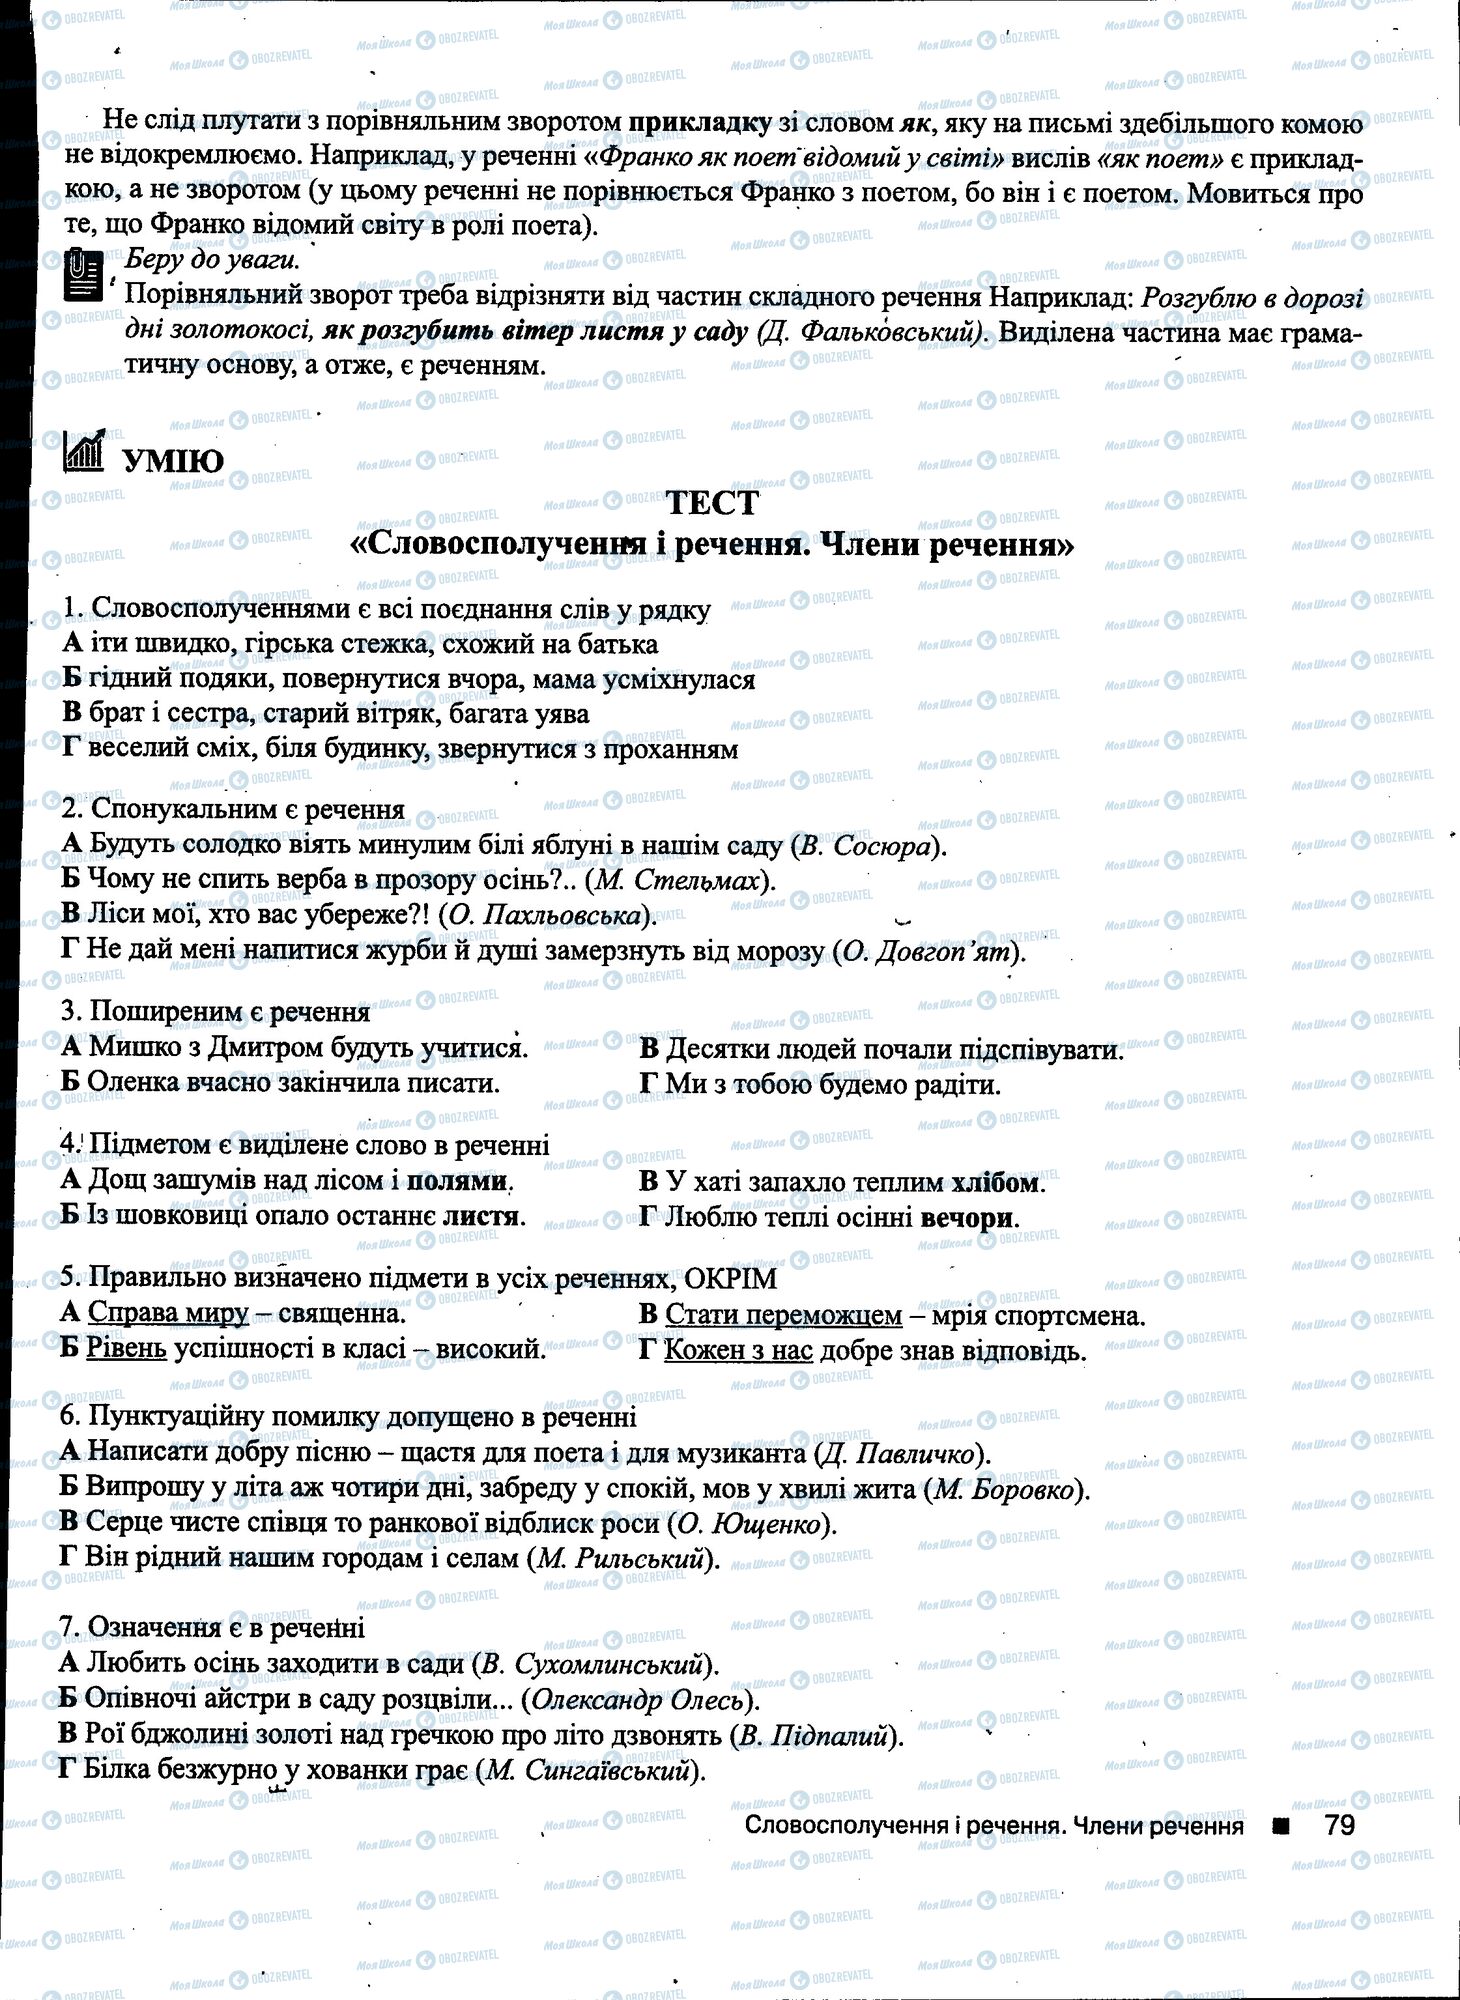 ДПА Укр мова 11 класс страница 079